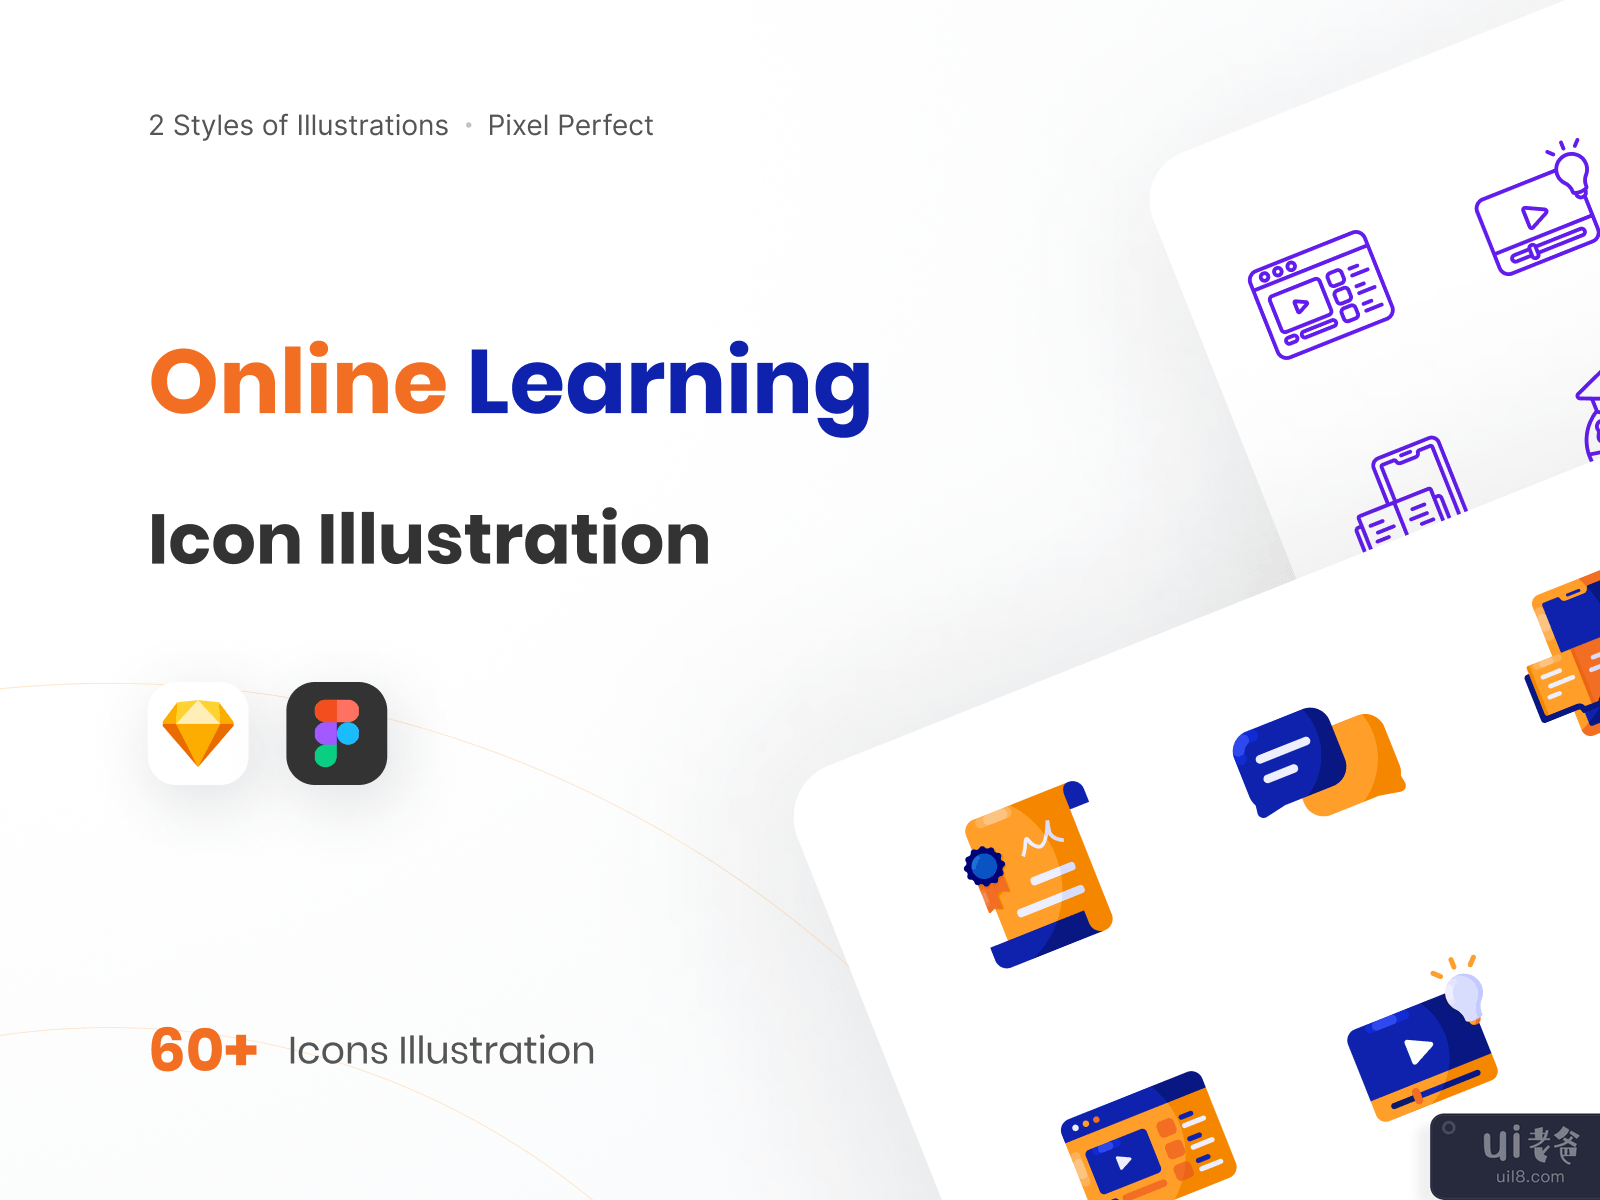 在线学习图标说明-组合样式(Online Learning Icon Illustration - Combination Styles)插图